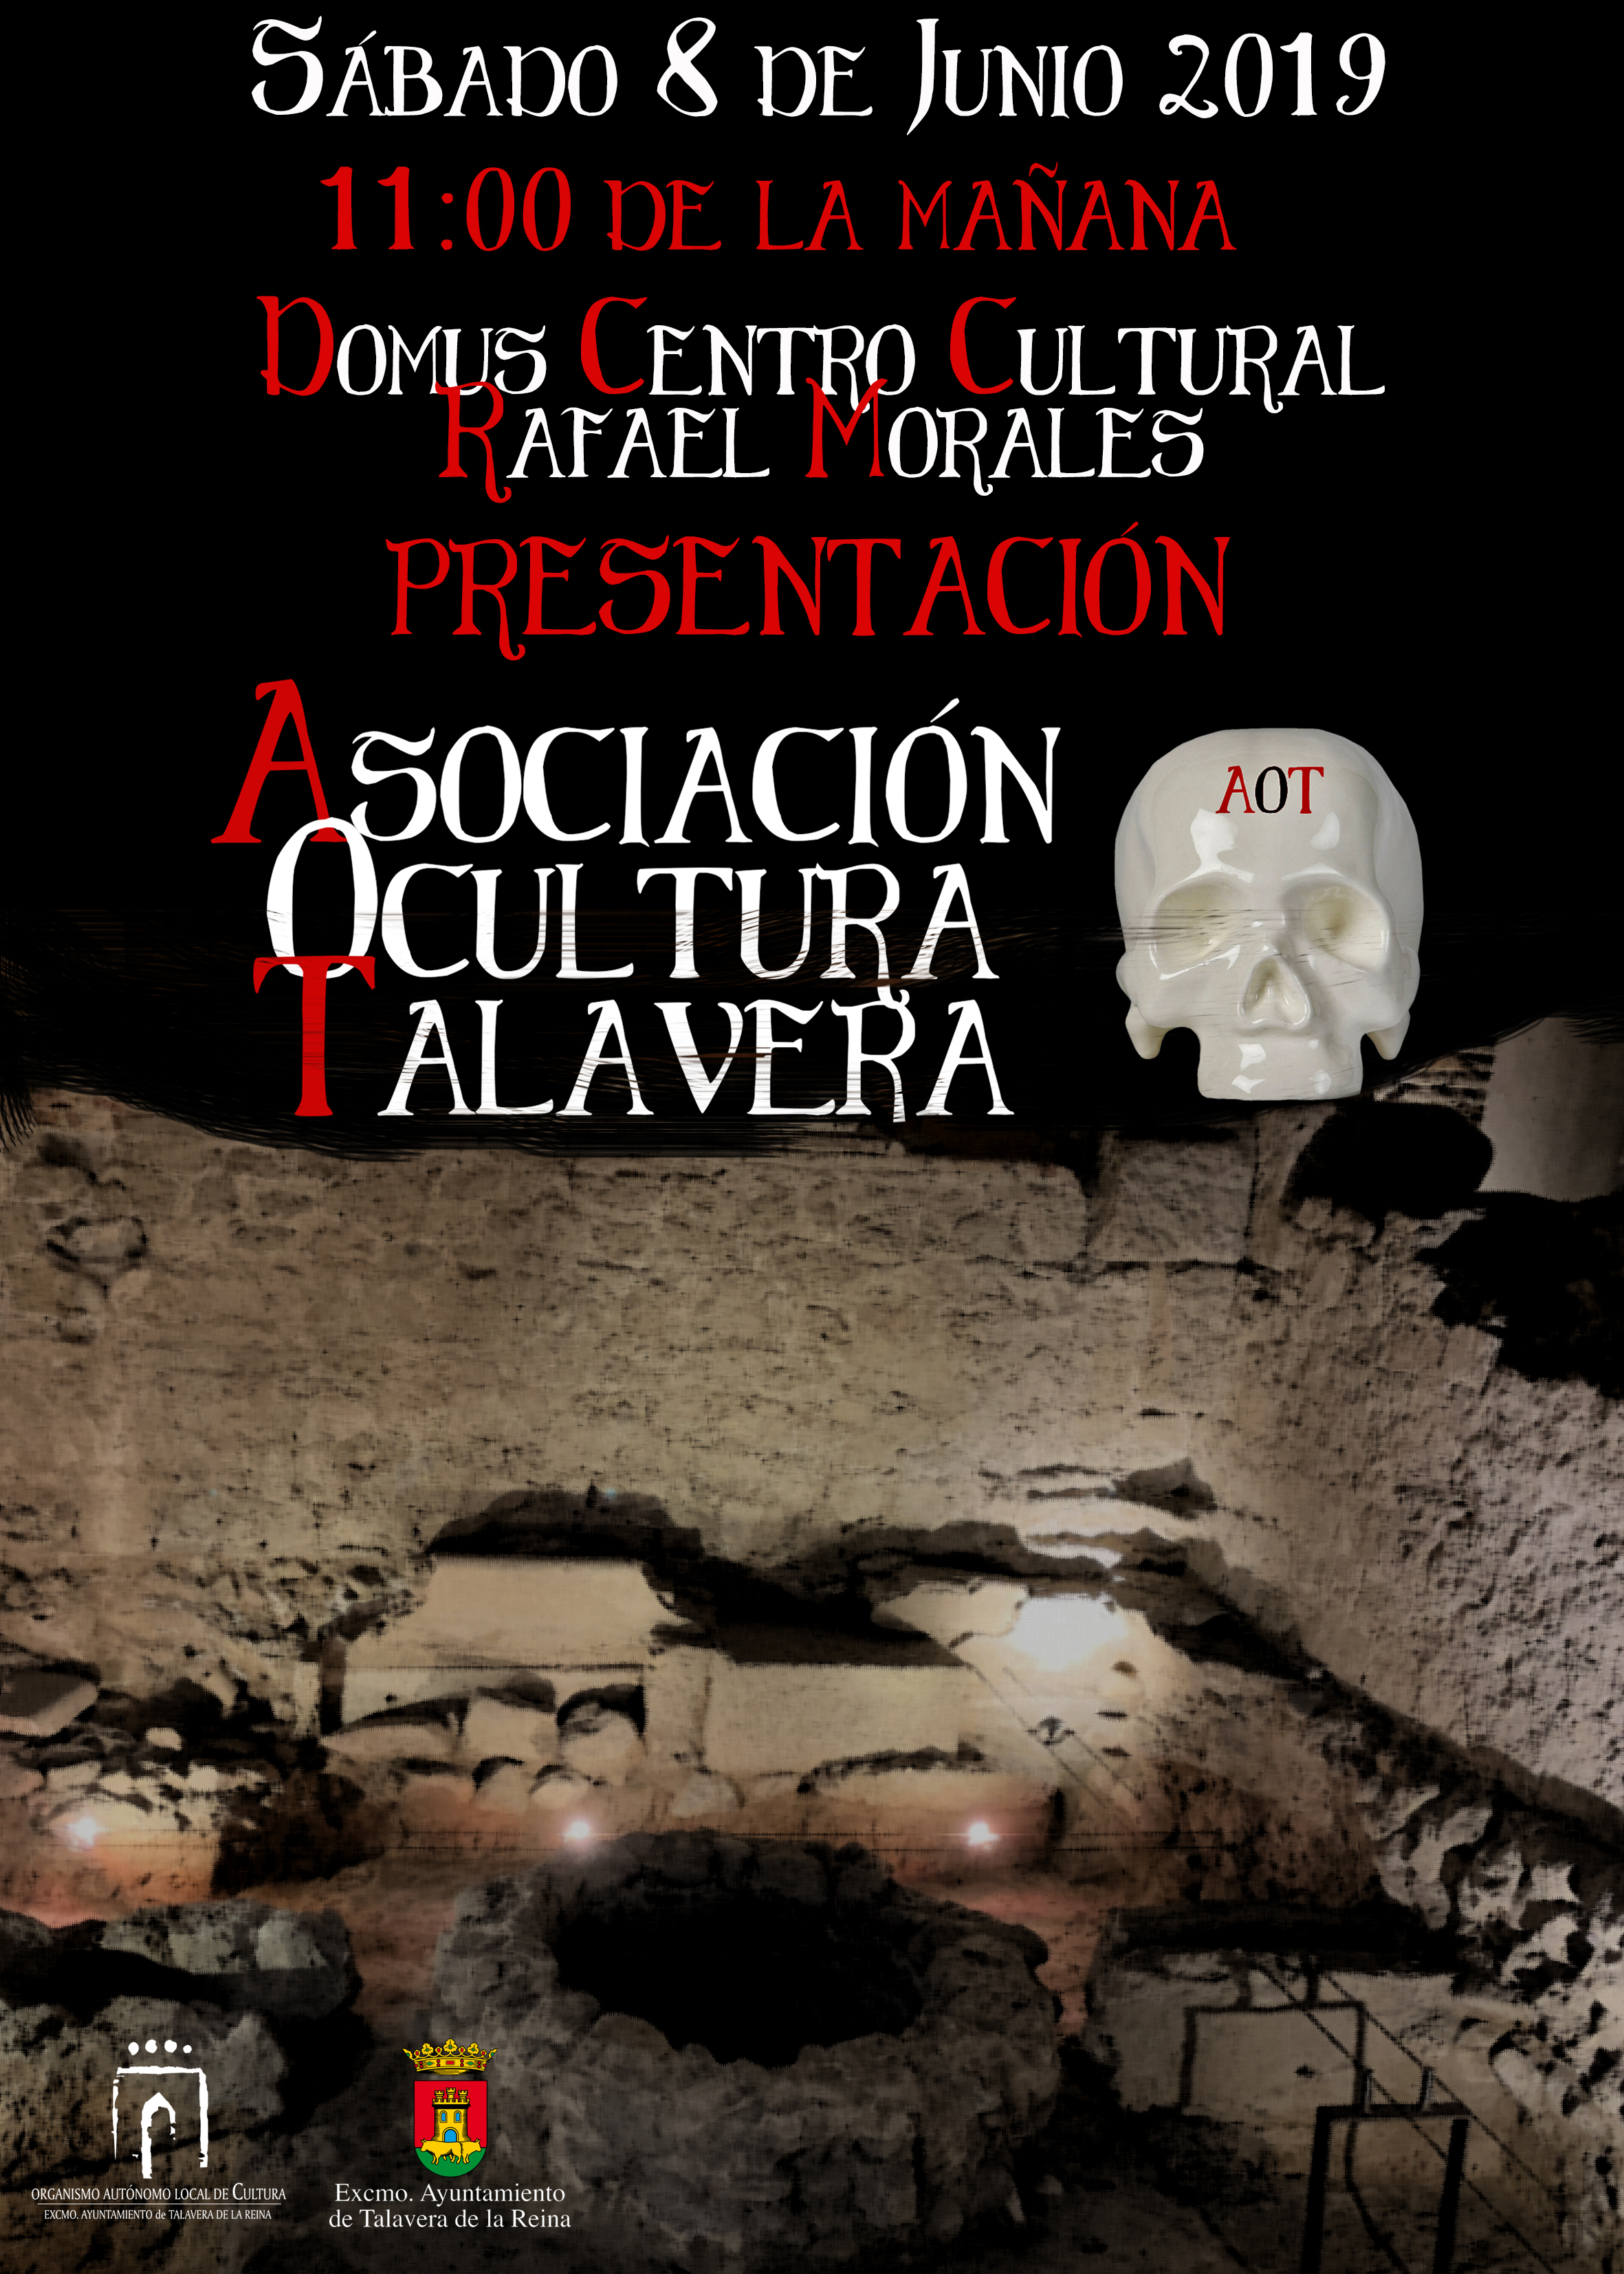 Presentación Asociación Ocultura Talavera